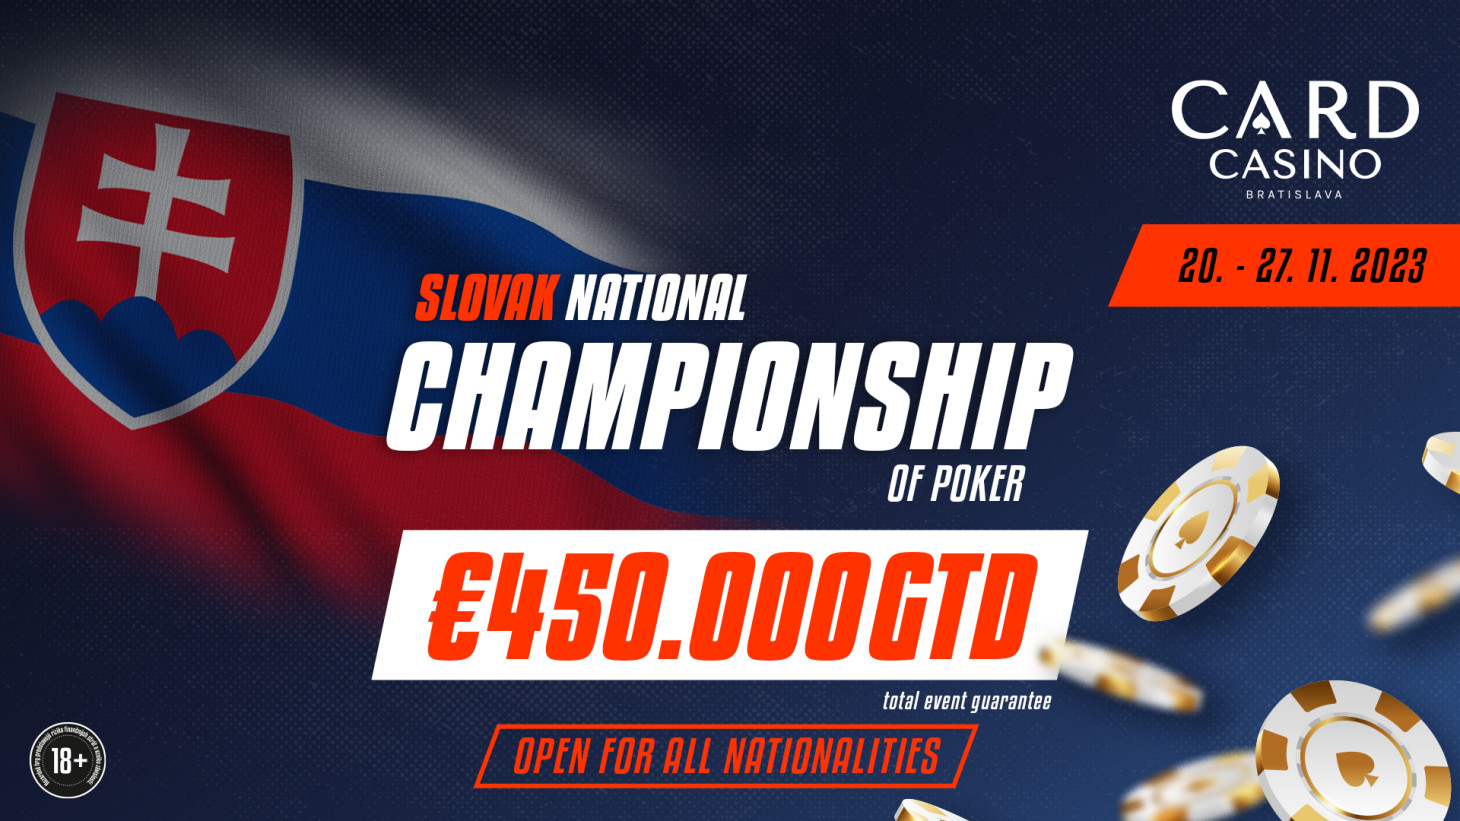 Wer wird der König der Slowakei? Die €450.000 GTD National Championship of Poker findet im November statt!